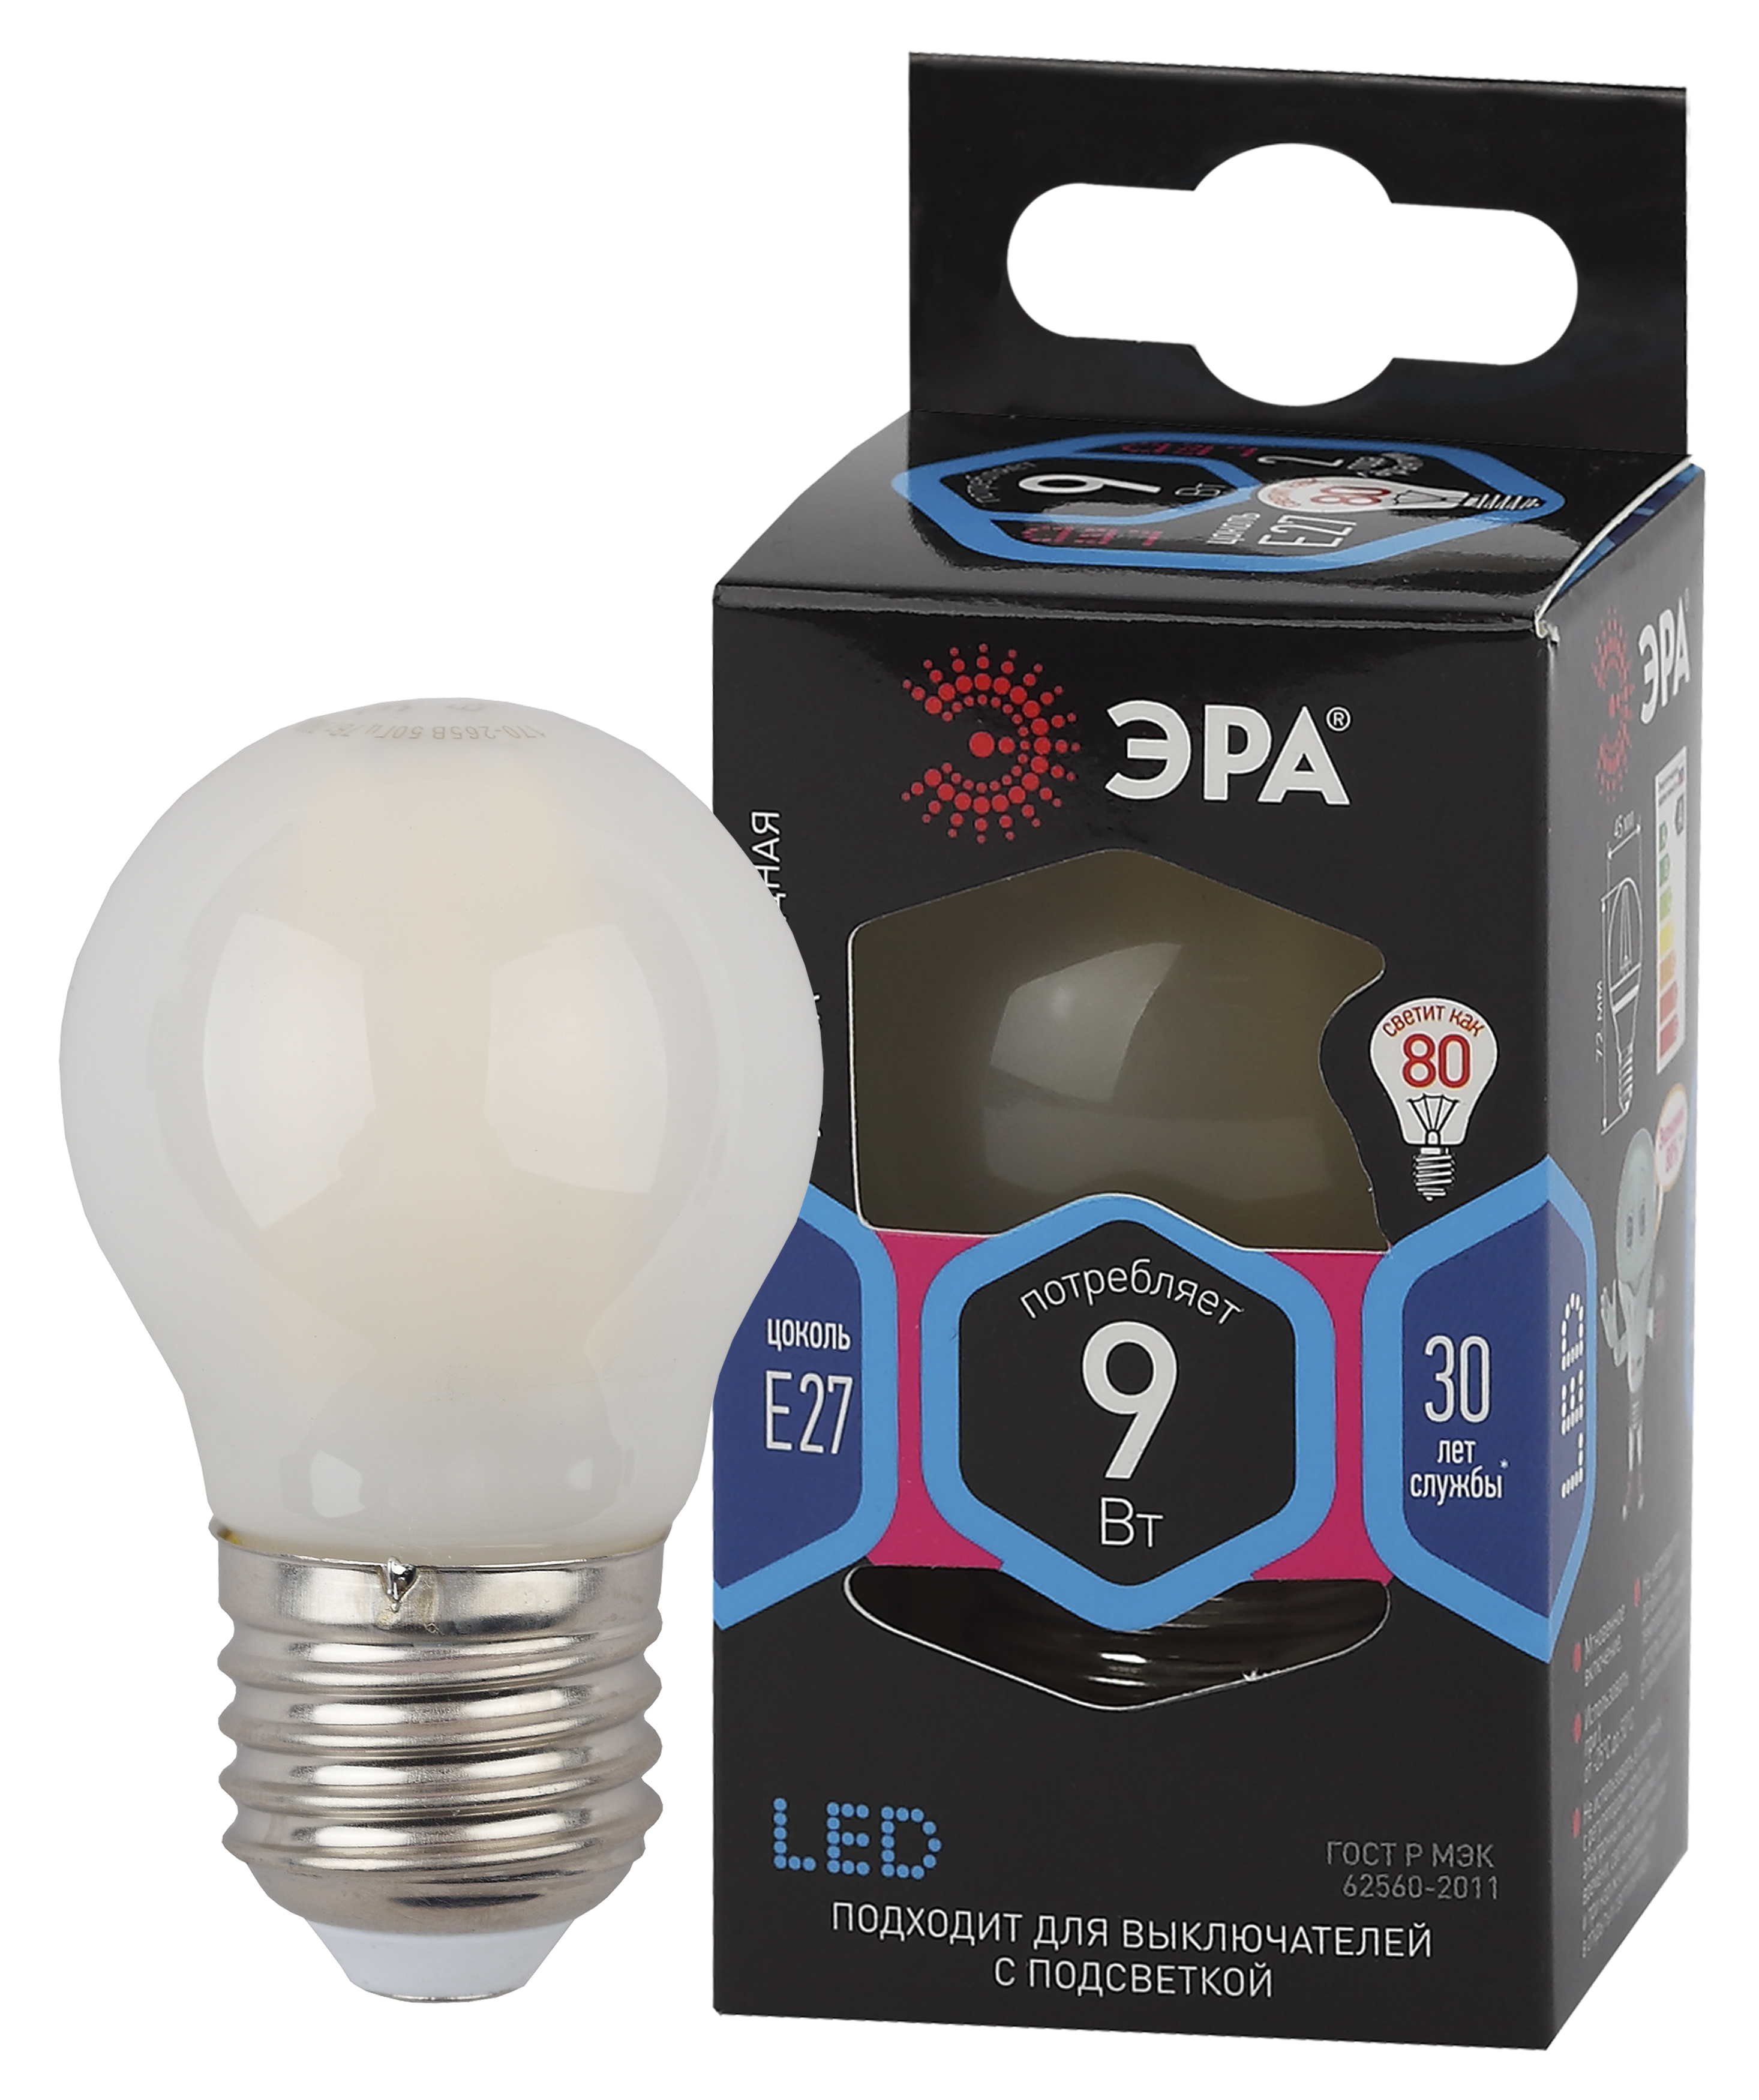 Лампочка светодиодная ЭРА F-LED P45-9w-840-E27 frost E27 / Е27 9Вт филамент шар матовый нейтральный белый свет